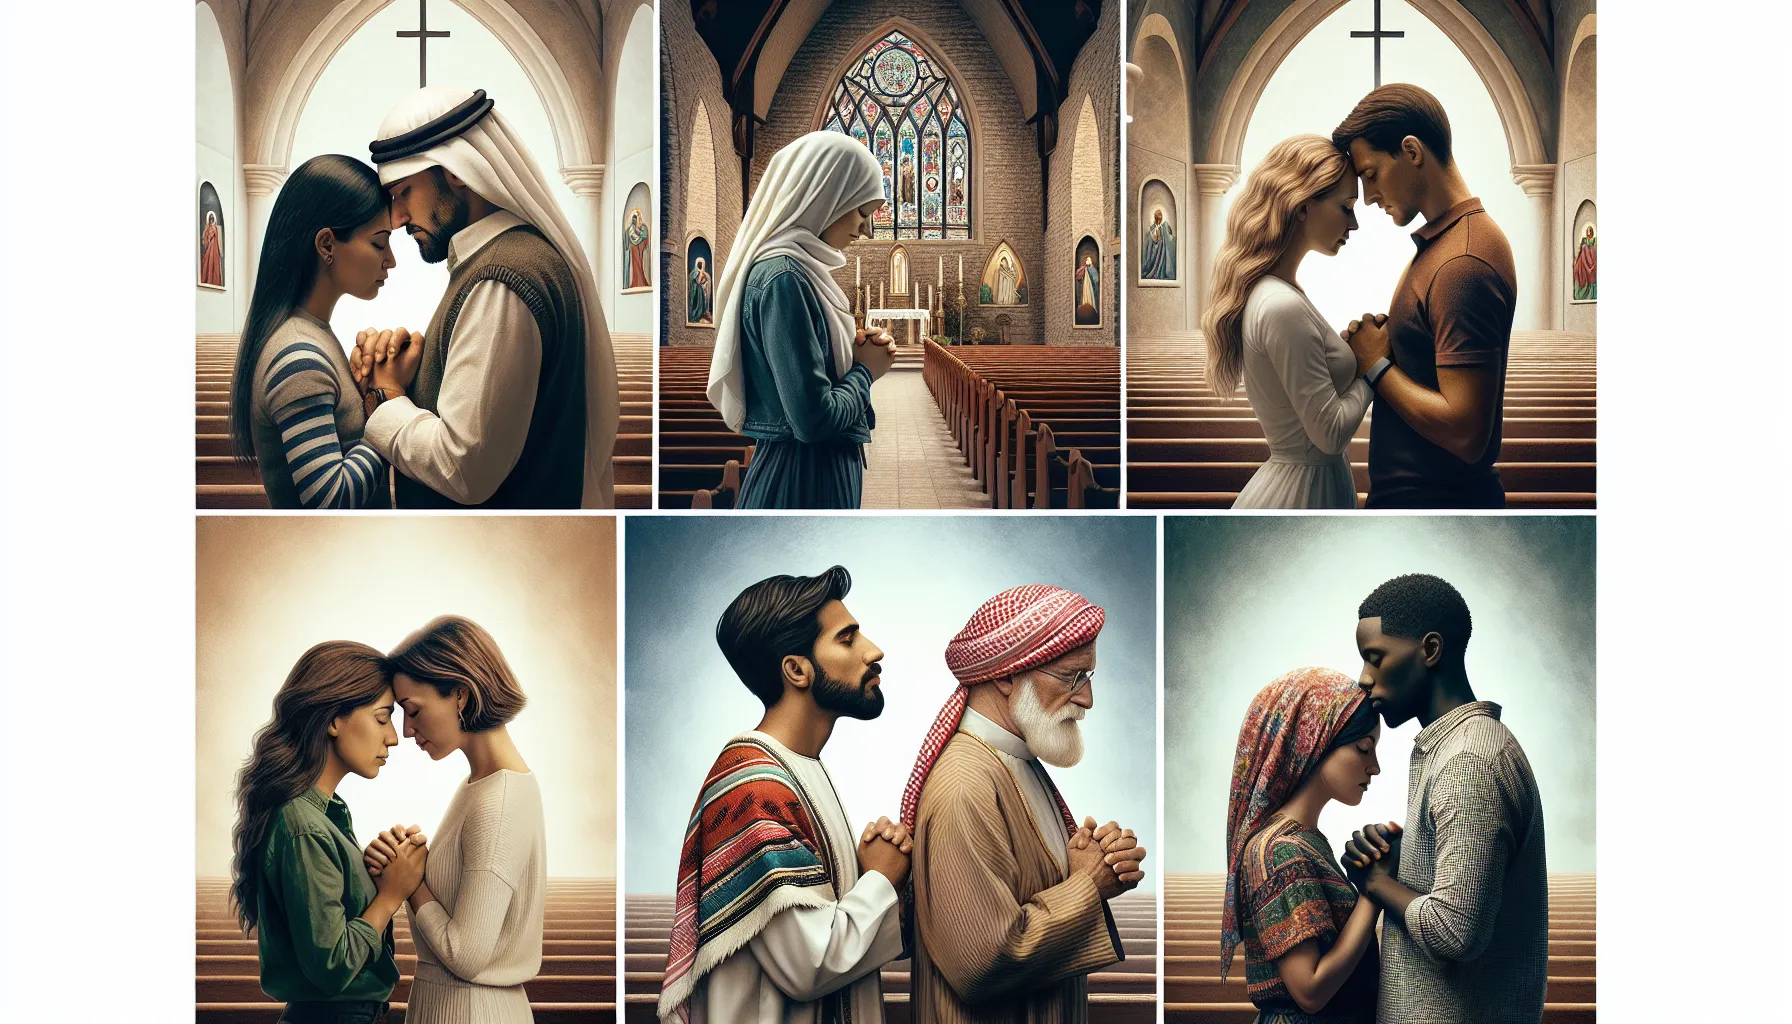 Imagen de parejas cristianas fortaleciendo su relación a través de la fe en distintas iglesias.